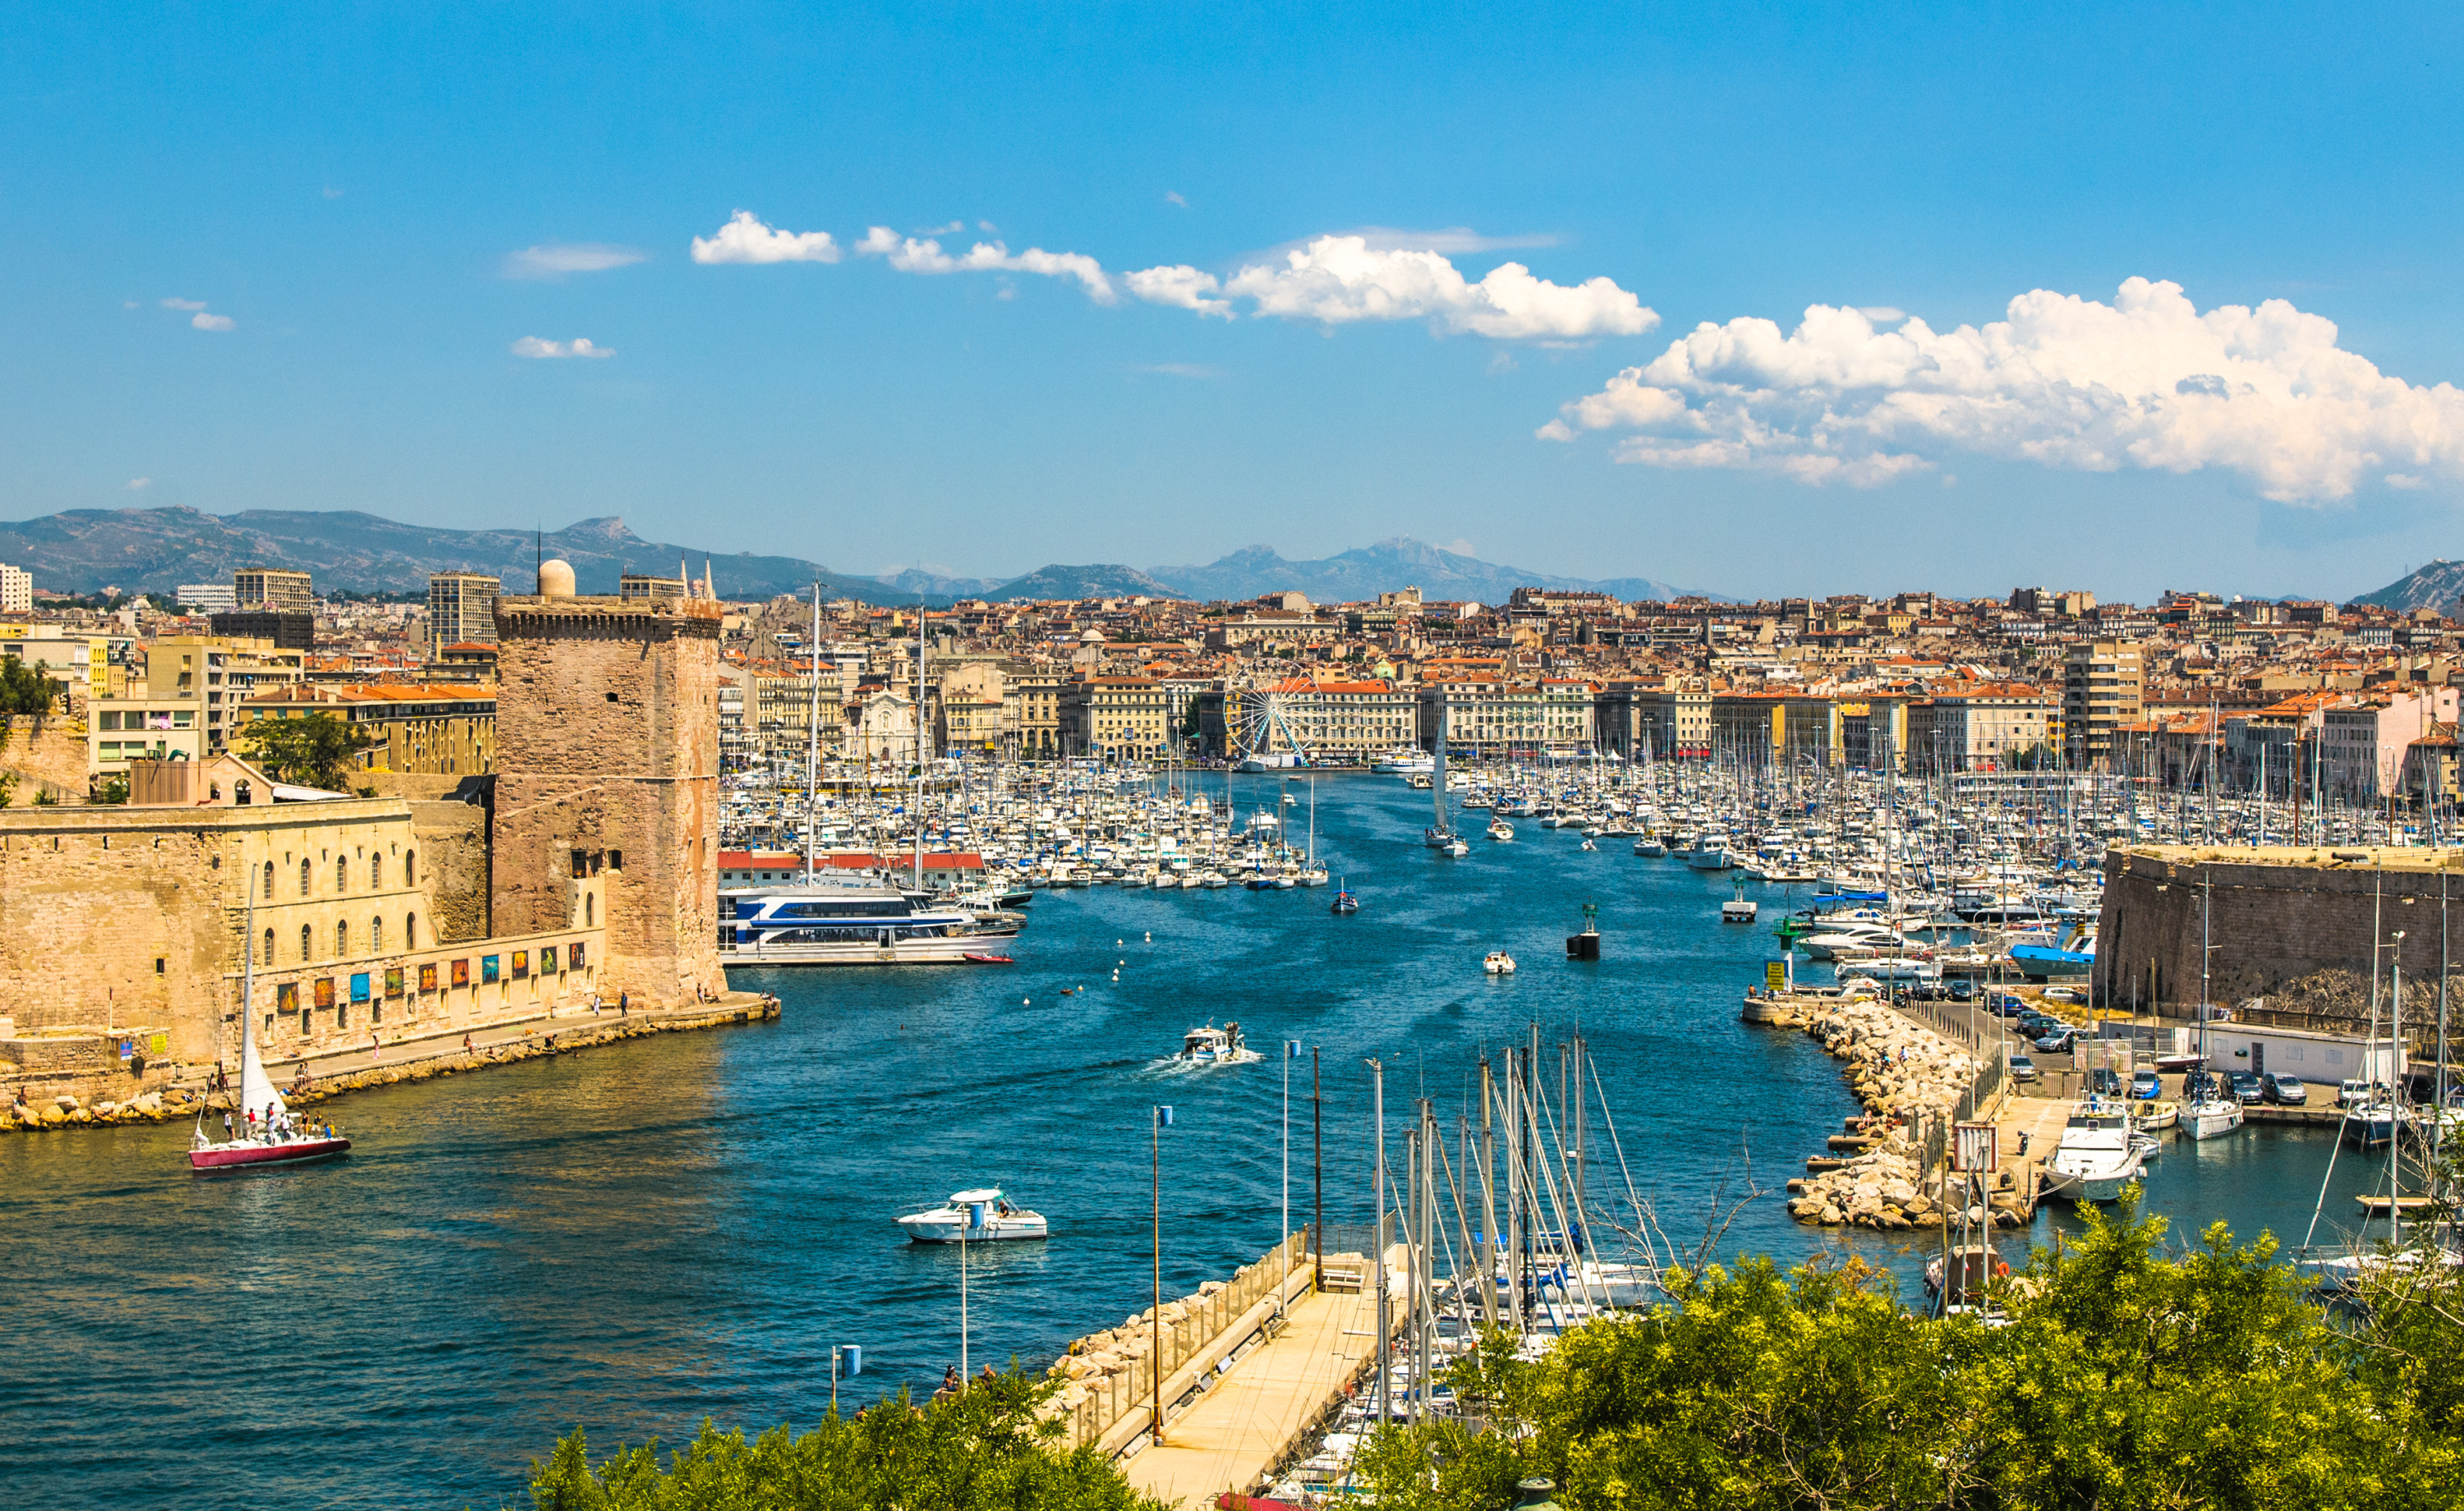 Feu vert du gouvernement pour un encadrement des loyers à Marseille